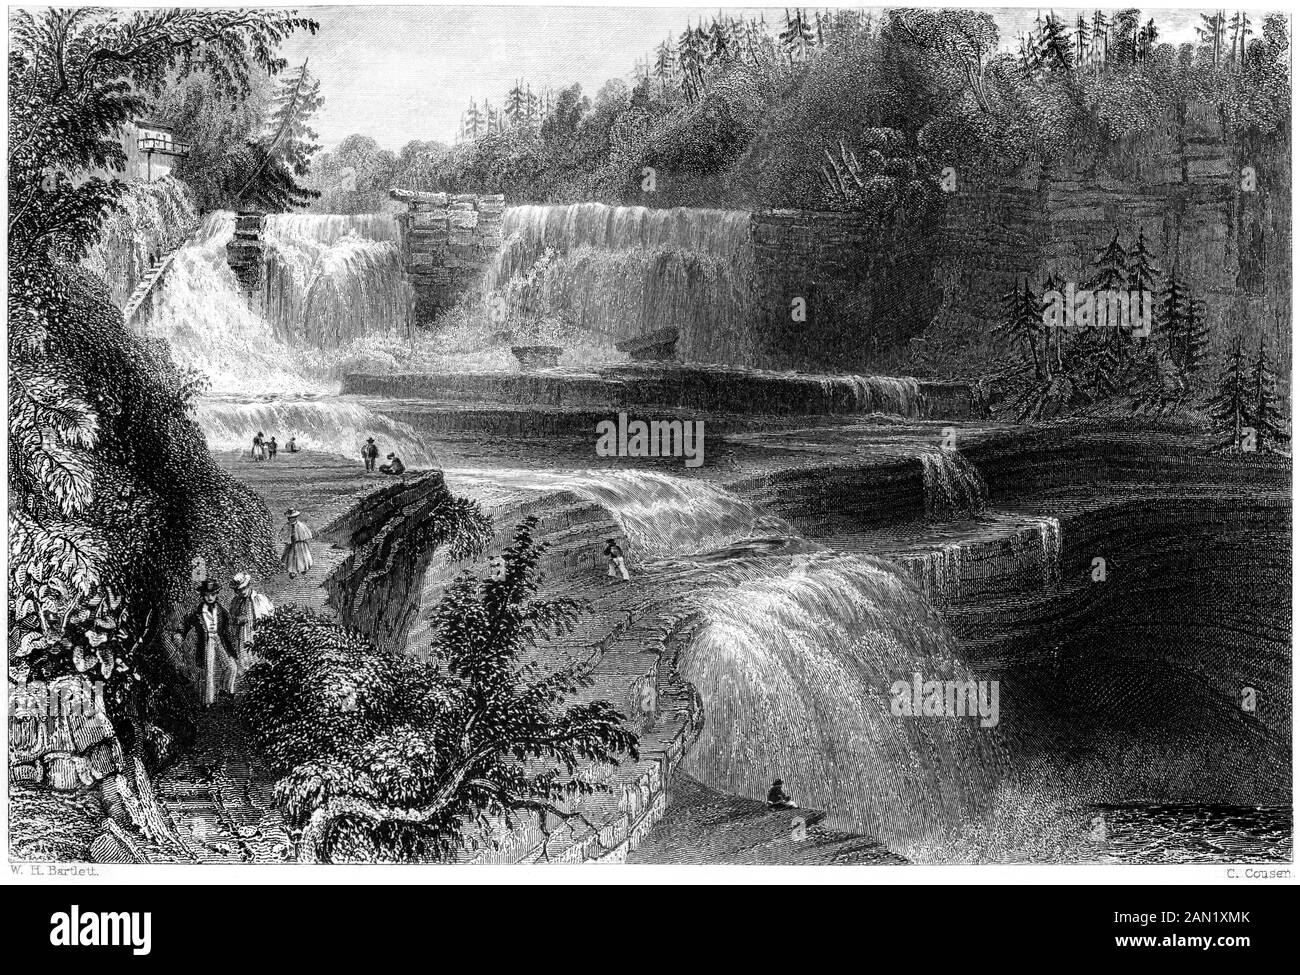 Une gravure de Trenton High Falls numérisées à haute résolution. à partir d'un livre imprimé en 1840. Croyait libres de droit. Banque D'Images